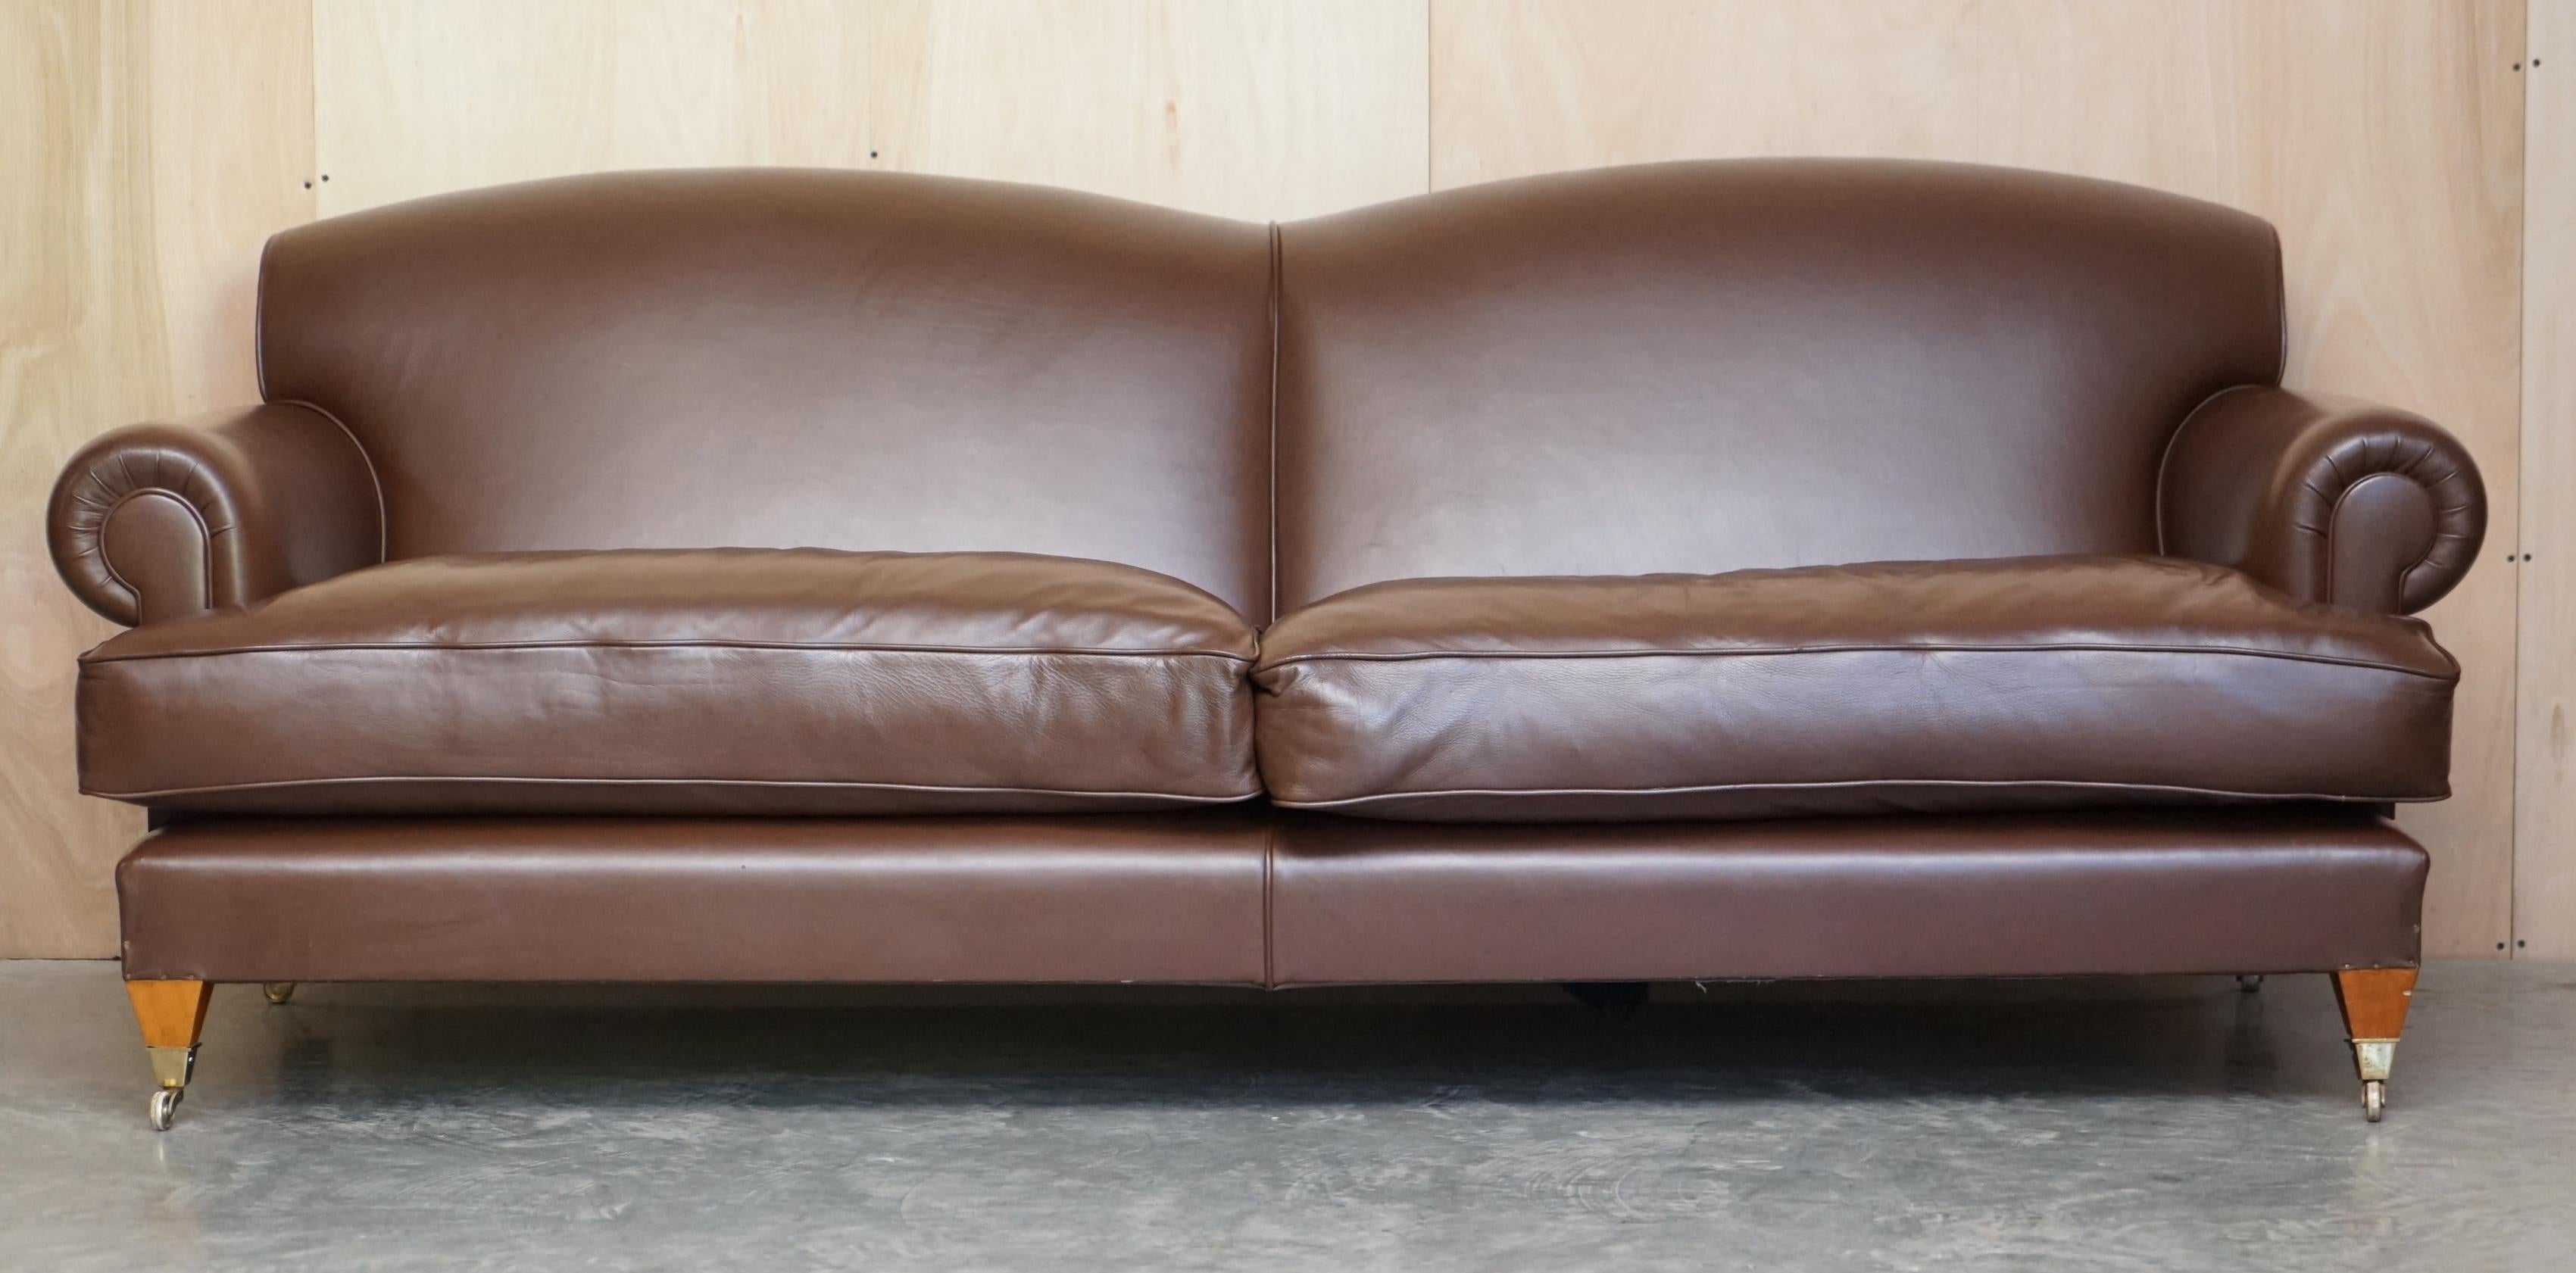 Wir freuen uns, dieses schöne, moderne, massiv braune Sofa im Stil von Howard & Son mit drei Sitzen, Messingrollen und Federkissen zum Verkauf anbieten zu können.

Ein gut aussehendes, gut gemachtes und sehr bequemes Sofa, wahrscheinlich von